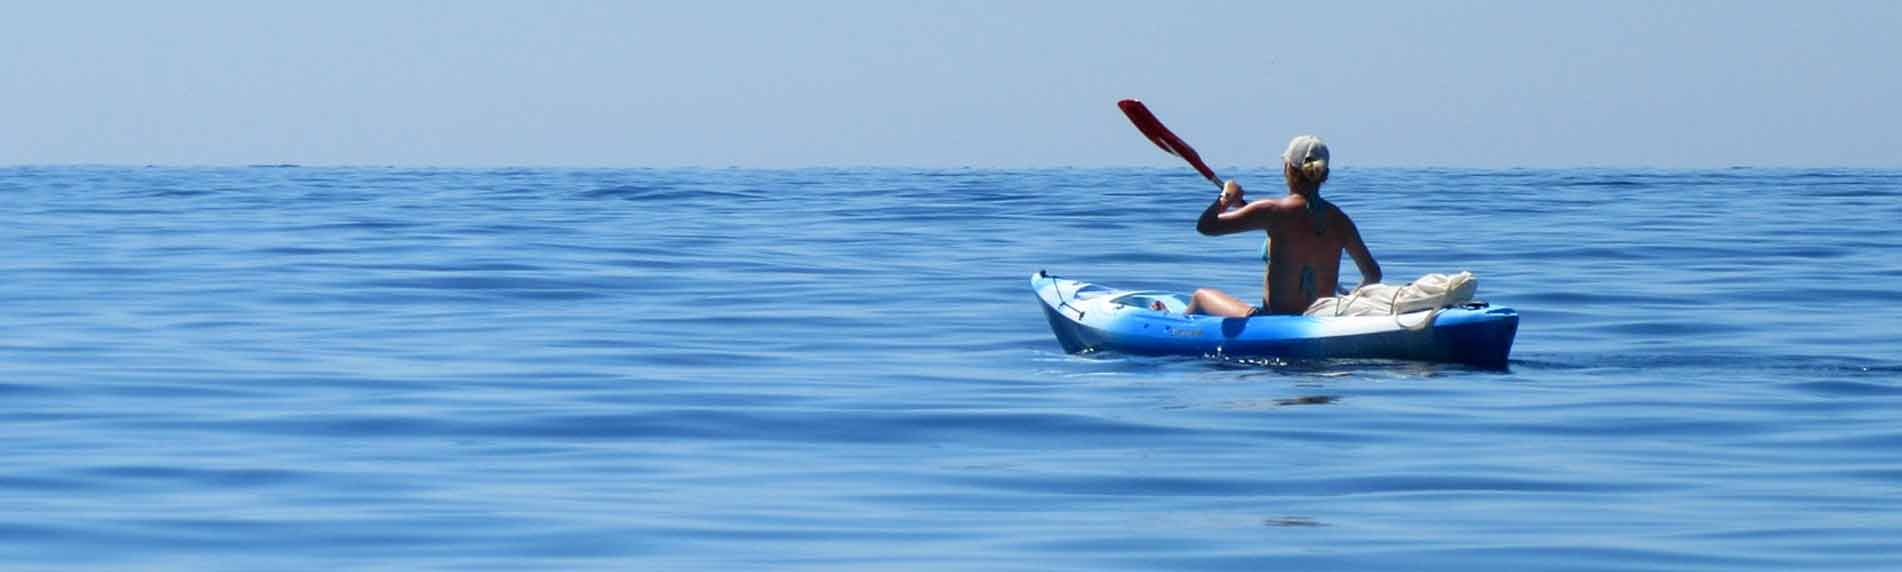 water sports kayaking